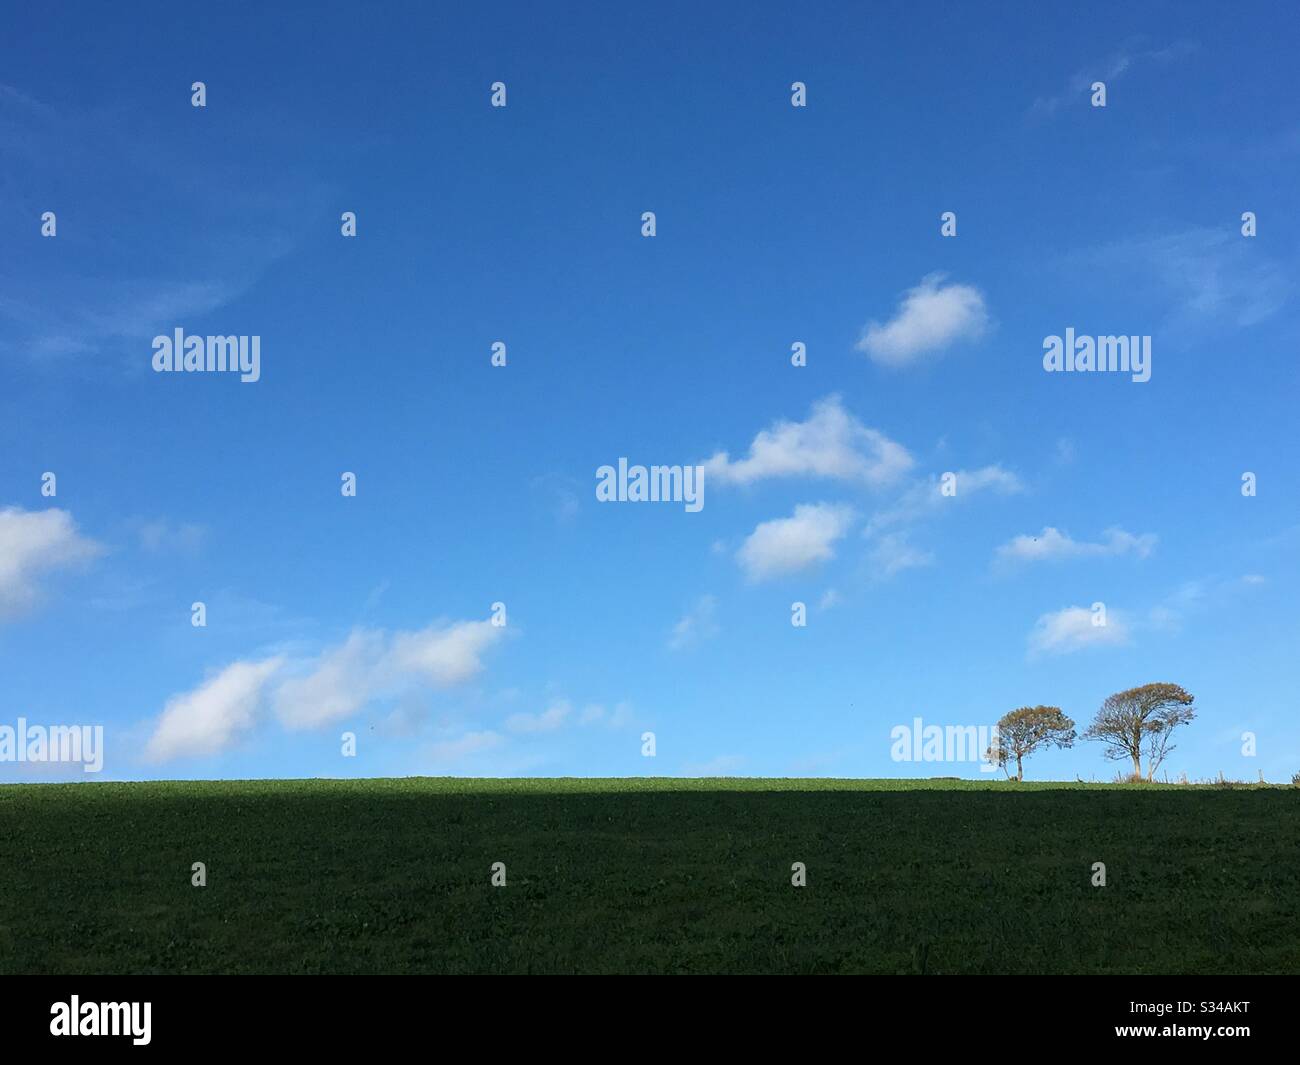 Two tiny trees on the horizon Stock Photo